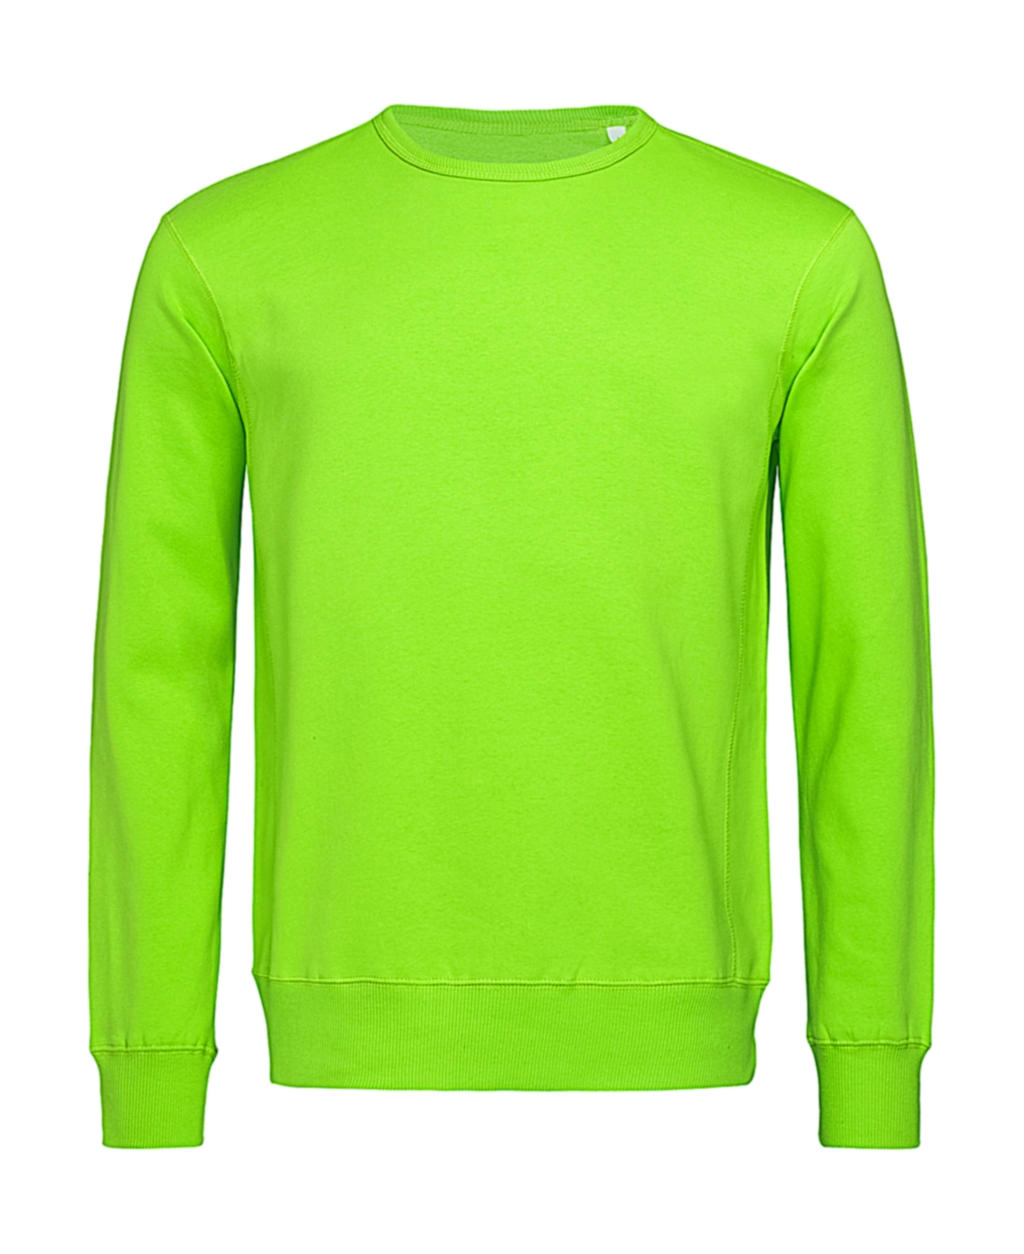 Sweatshirt Select zum Besticken und Bedrucken in der Farbe Kiwi Green mit Ihren Logo, Schriftzug oder Motiv.